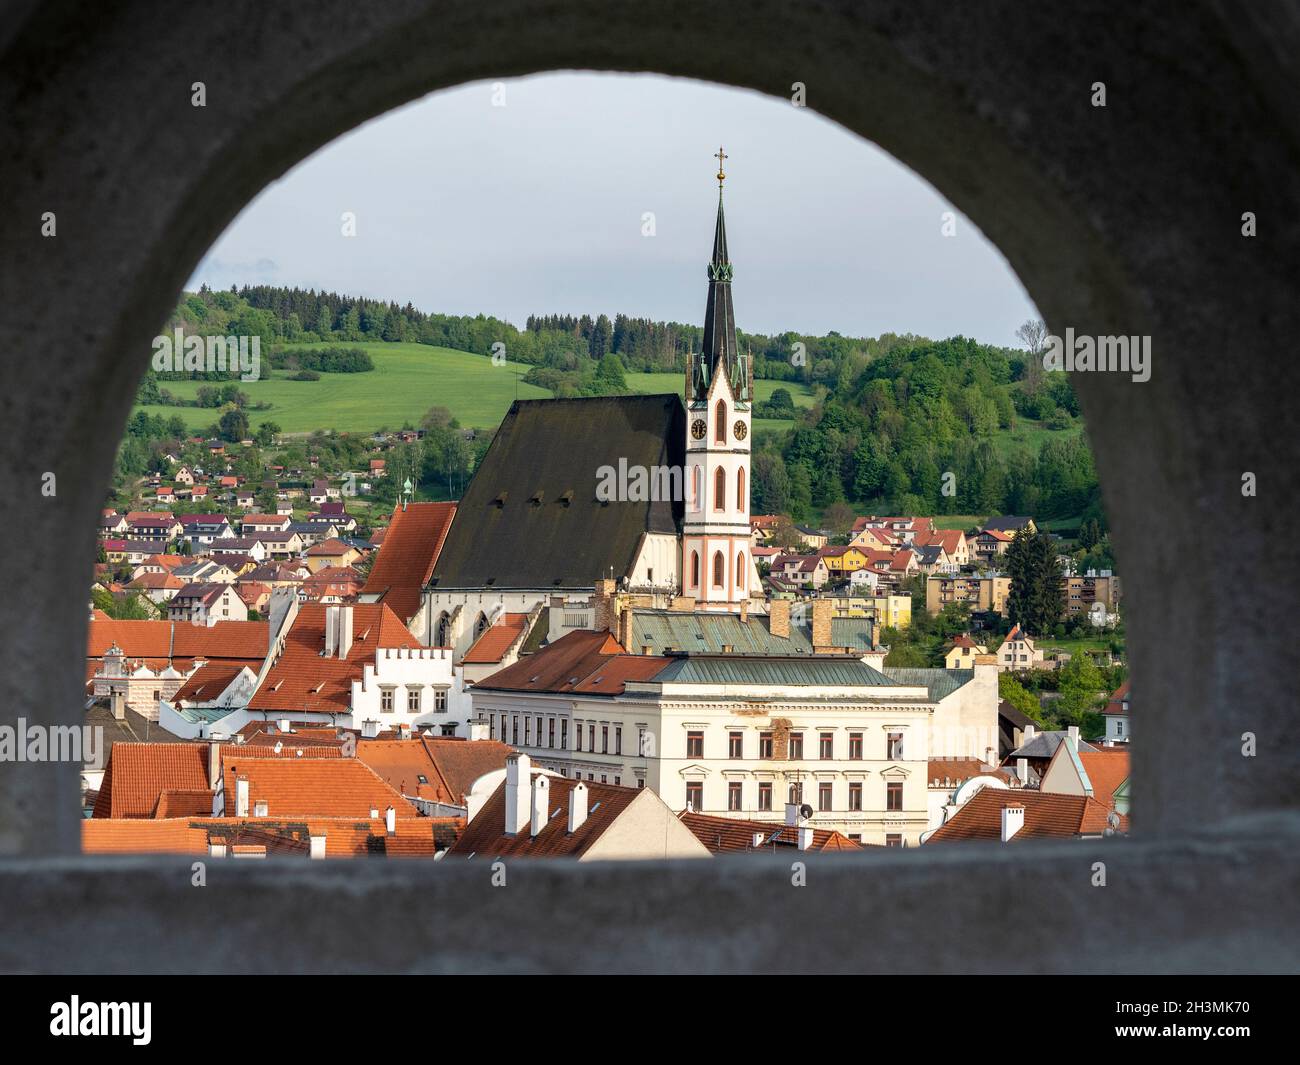 Vista de Cesky Kromlov desde el Castillo Walk: Imagen de la ciudad de Cesky Krumlov y la Iglesia de San Vito enmarcada por uno de los arcos de la pasarela del castillo. Foto de stock